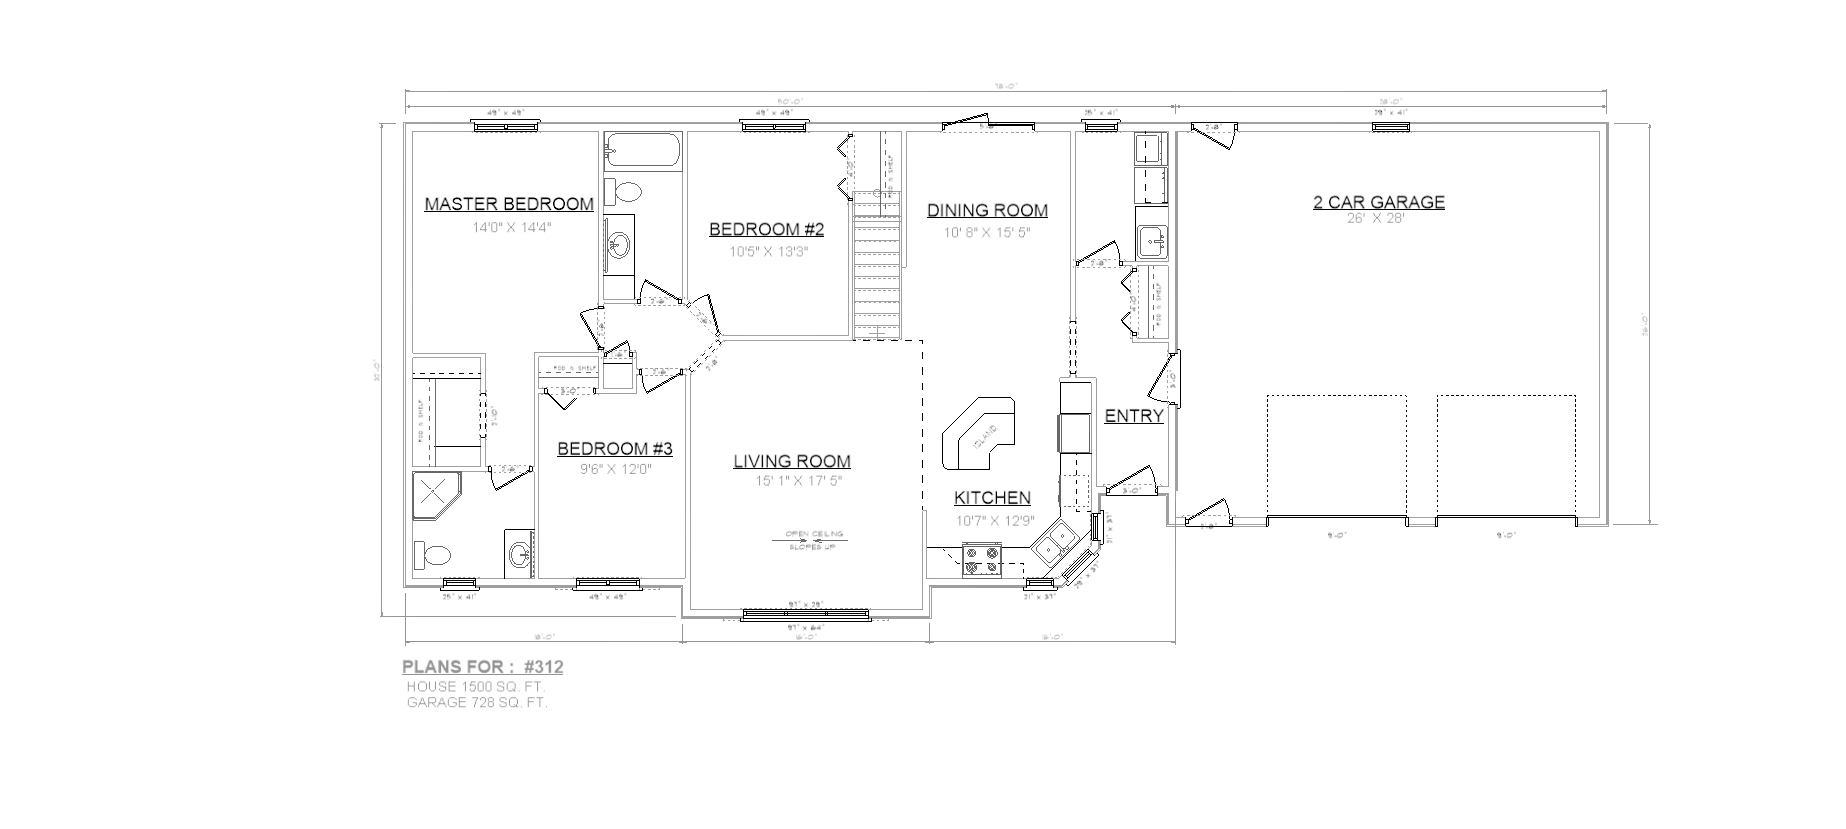 Penner Homes Floor Plan Id: 312